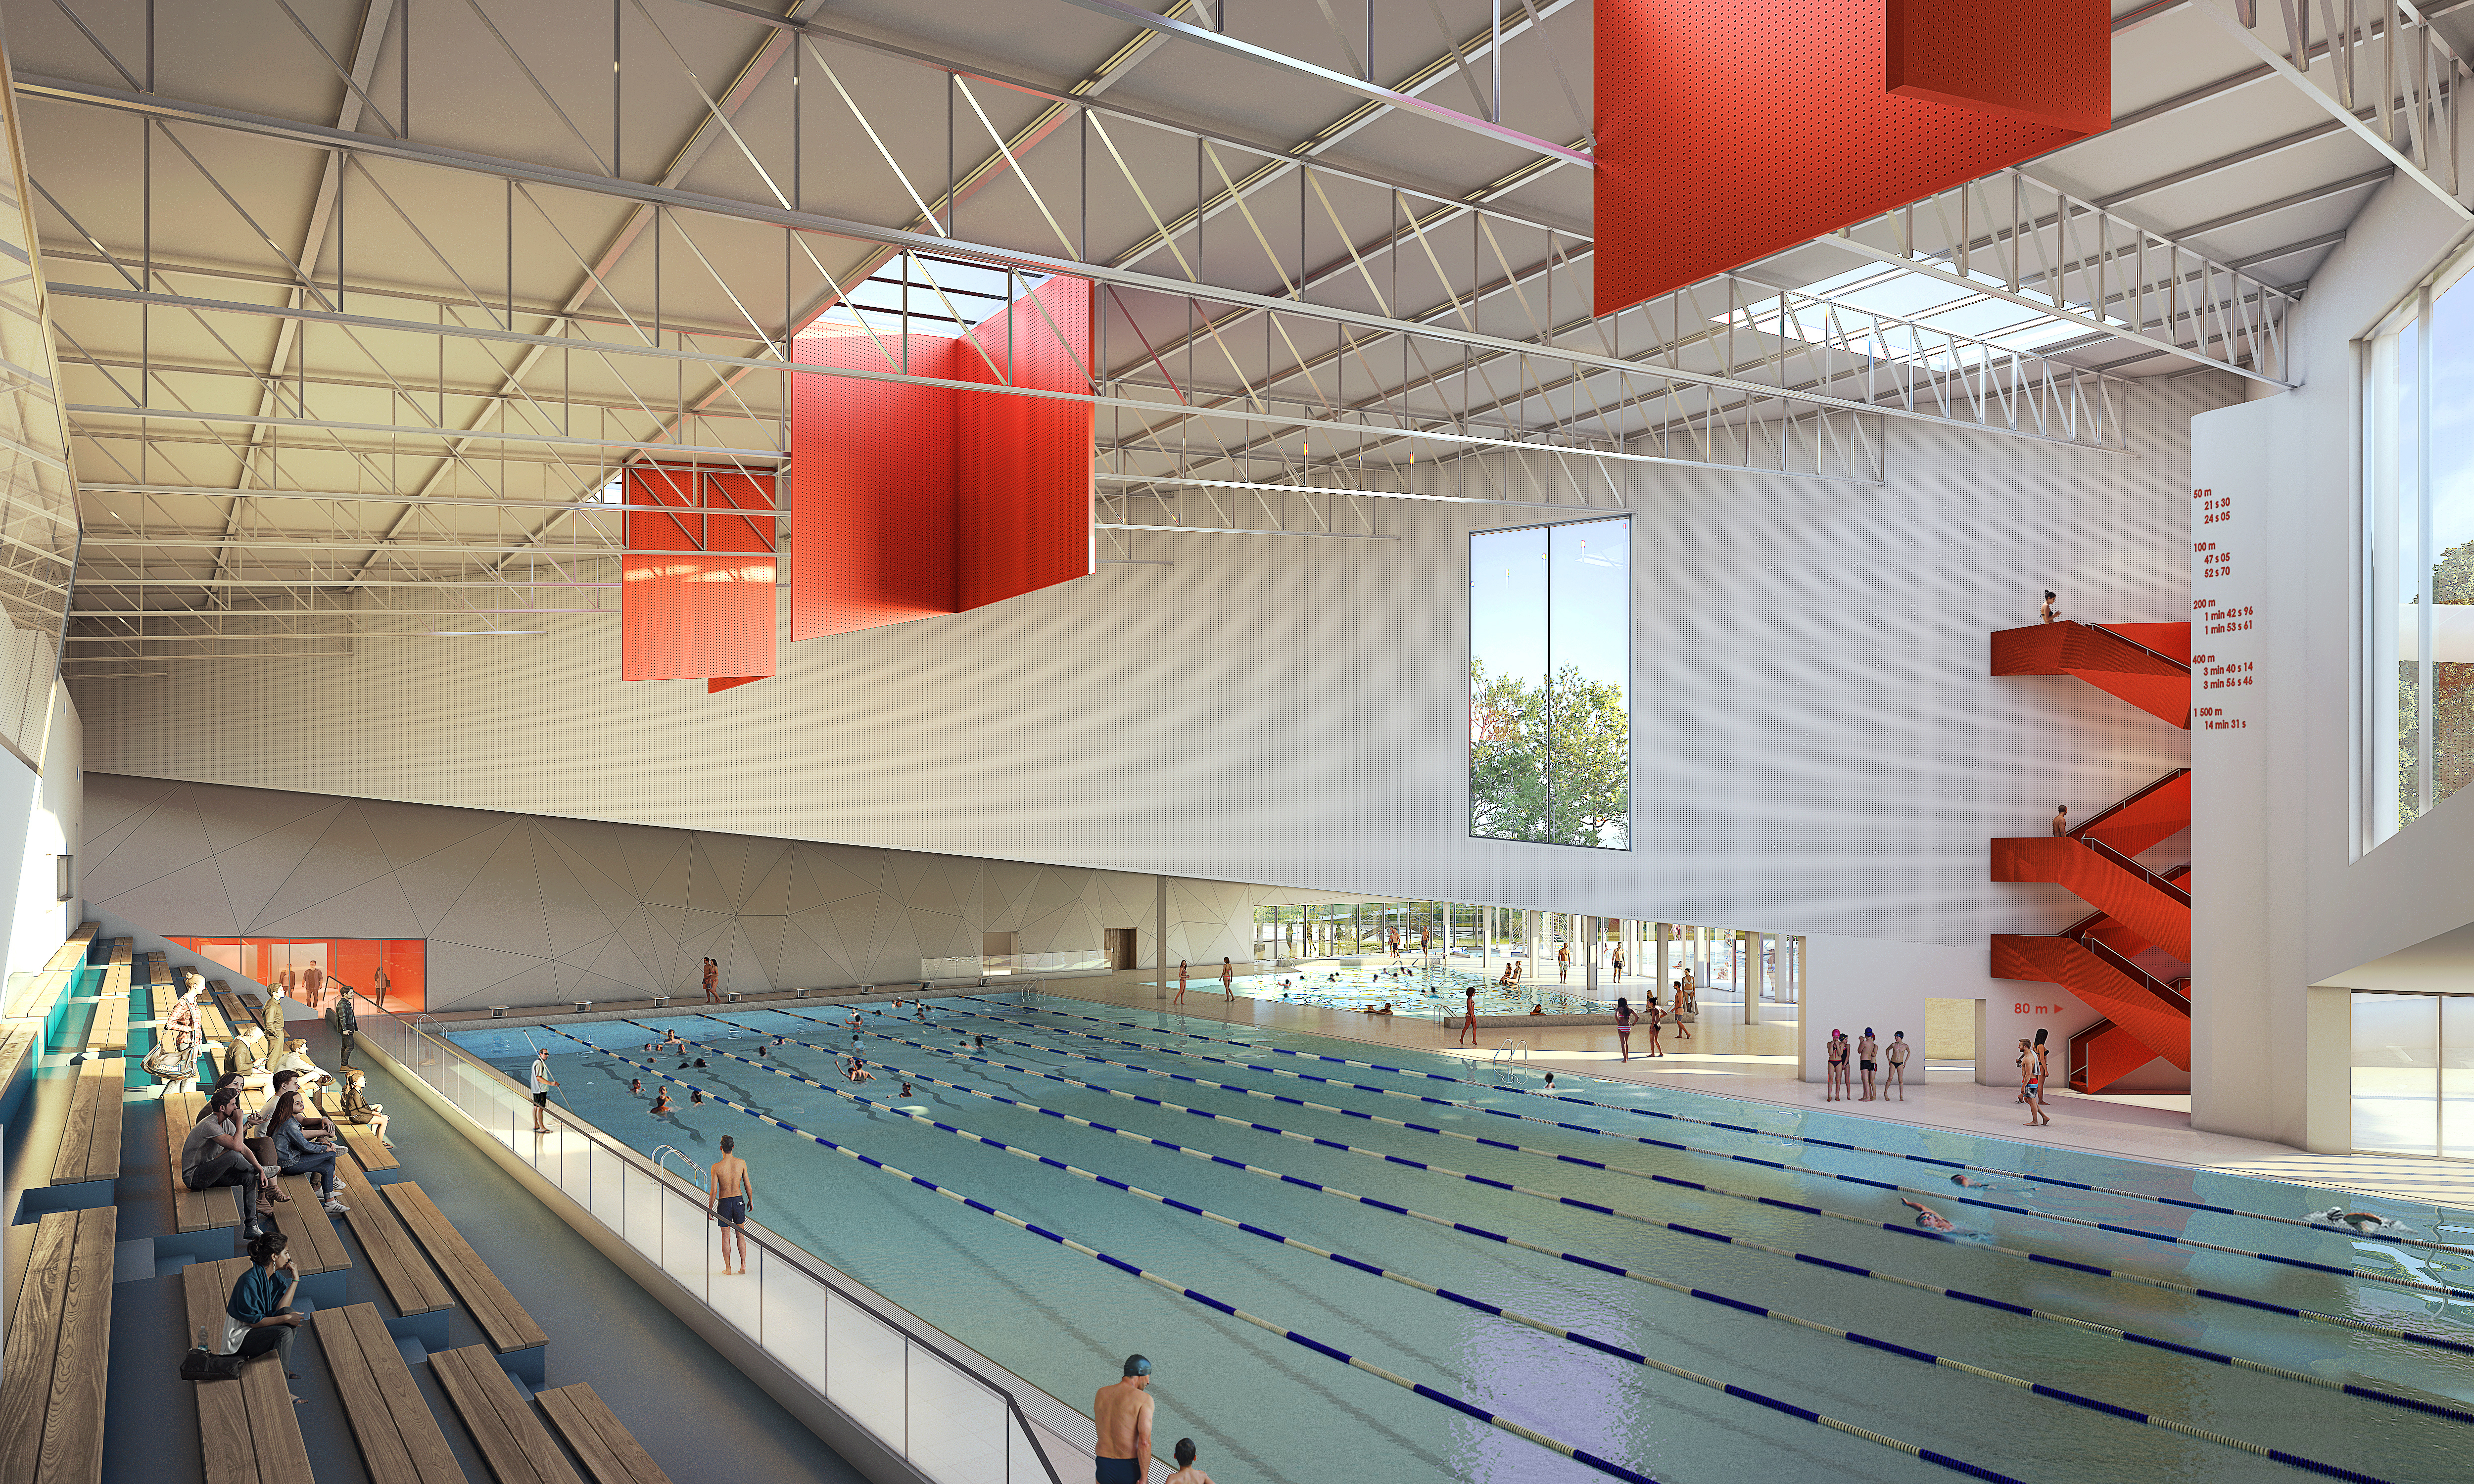 La piscine municipale de Colombes (ici un visuel d'architectes) deviendra bassin d’entraînement pour les JO de Paris cet été. Ville de Colombes